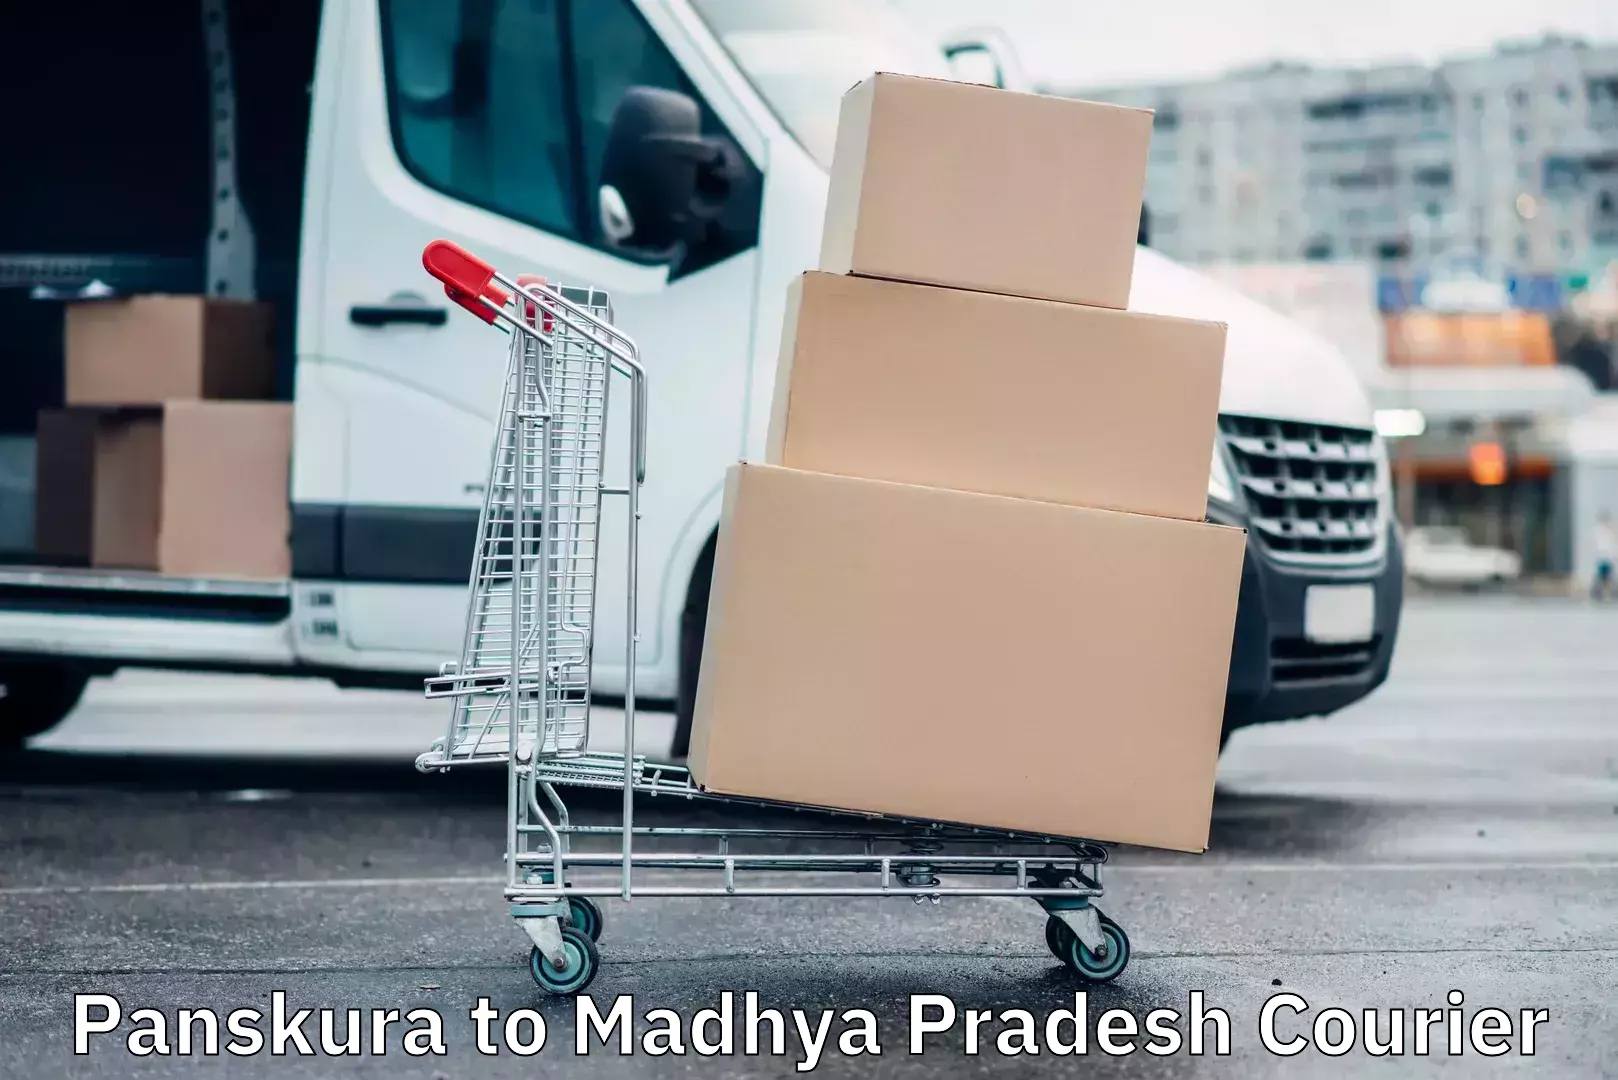 Express mail solutions Panskura to Madhya Pradesh